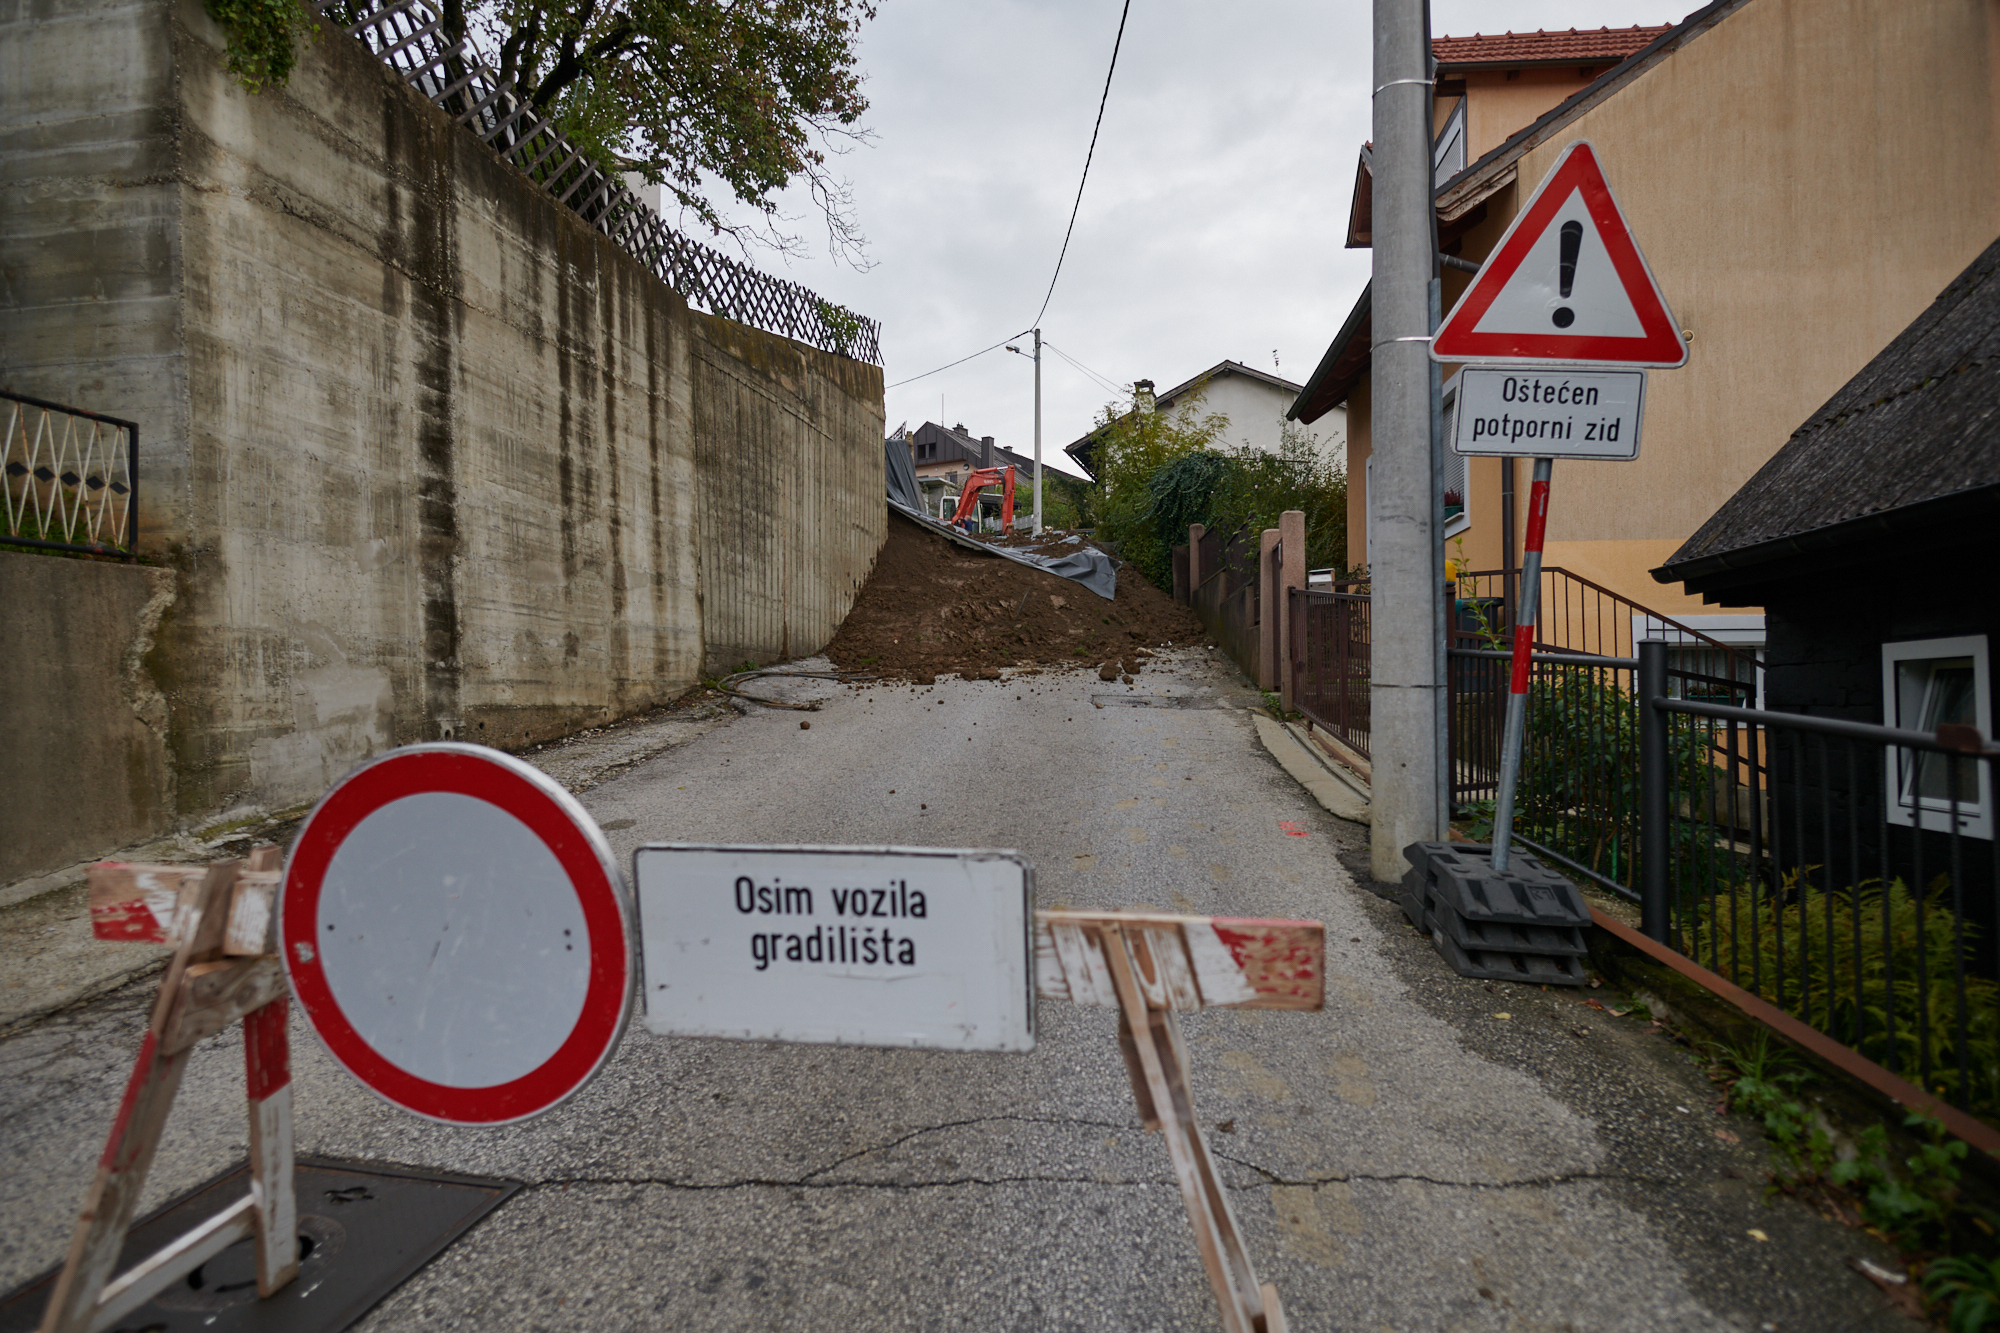 Kako je nakon pada zid na cestu skliznula veća količina zemlje, ulica je zatvorena za promet. Kao što se vidi na fotografijama, popustio je dio zida širine nekoliko metara, nakon čega se urušio dio padine koju je zid podbočio.